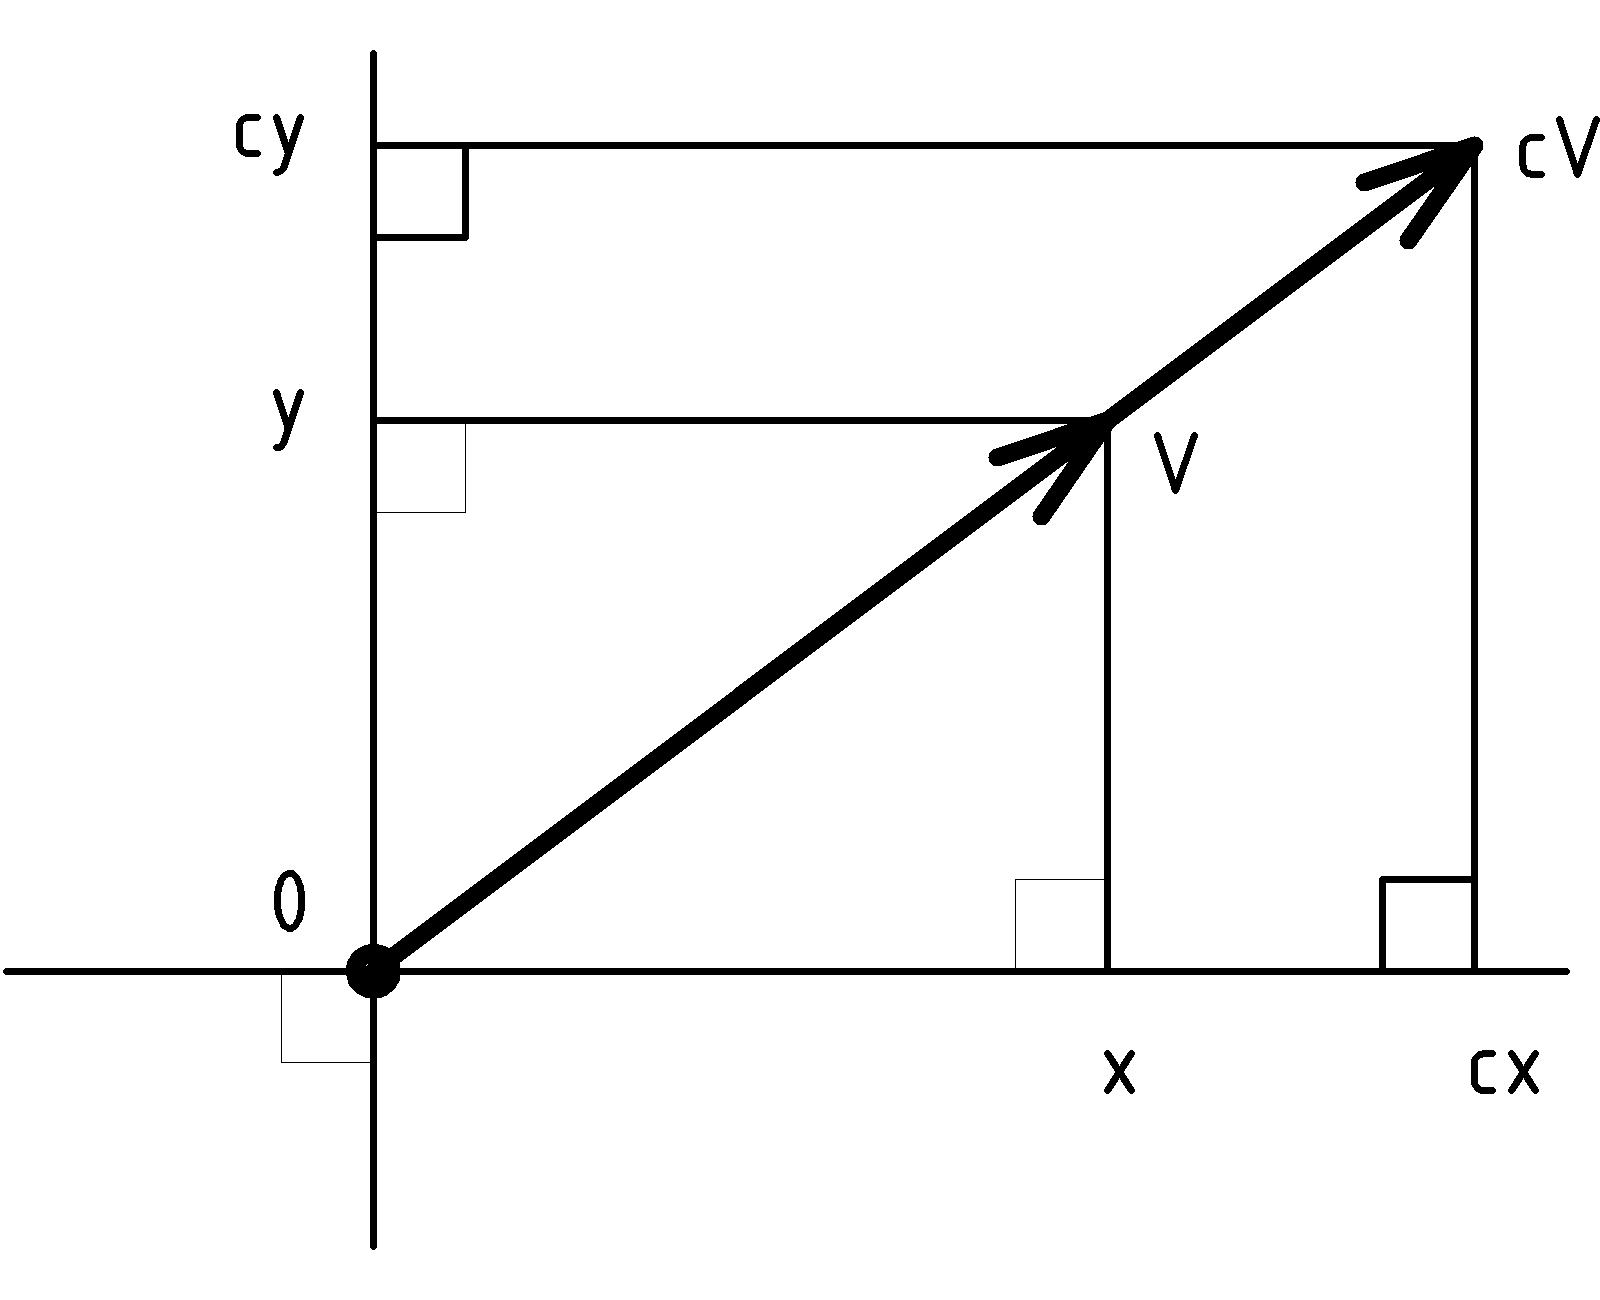 figure VxScale2.png